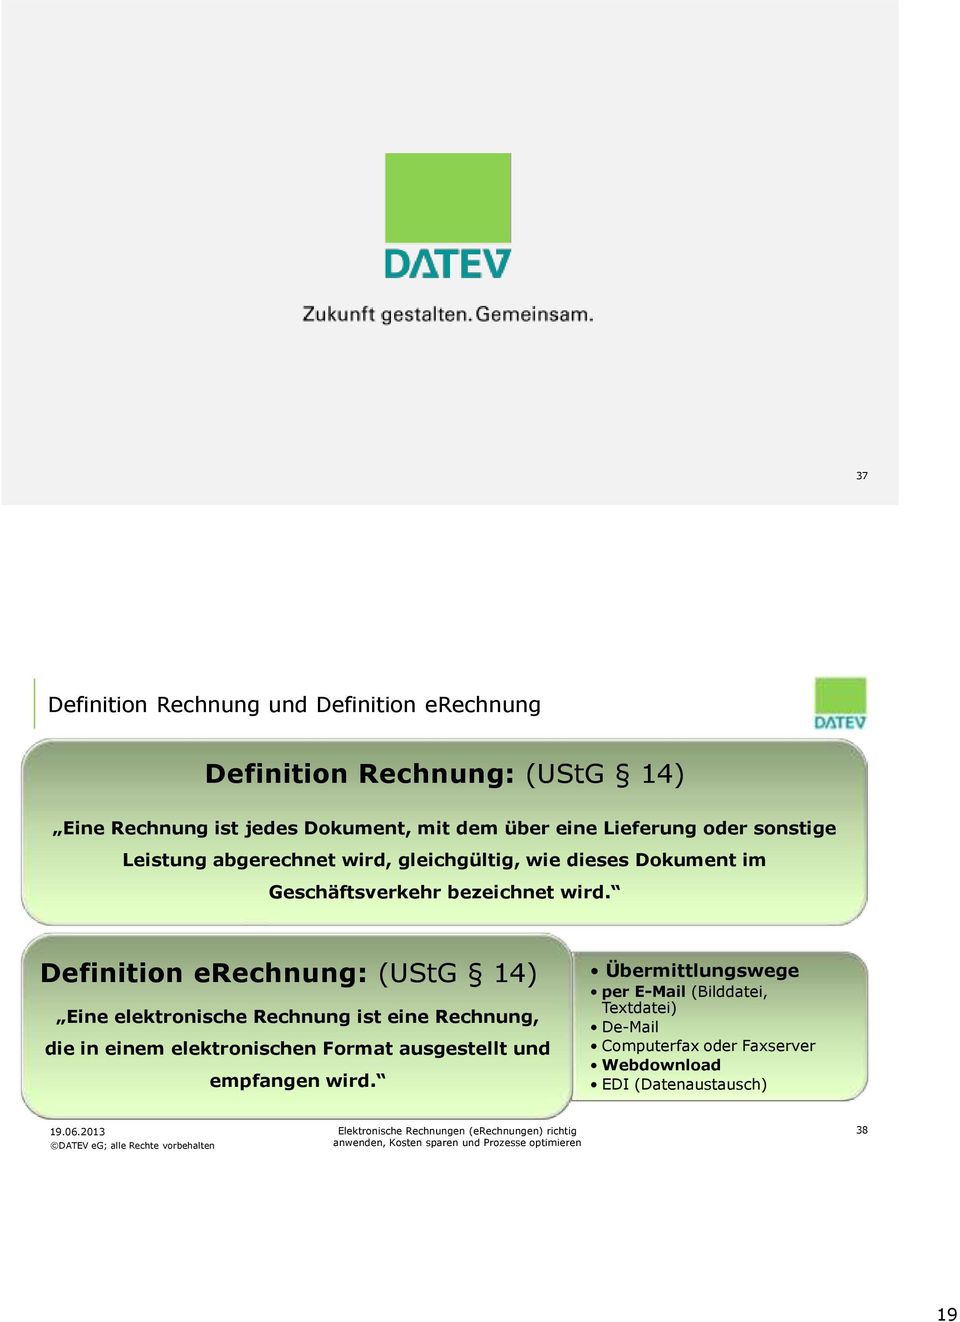 Definition erechnung: (UStG 14) Eine elektronische Rechnung ist eine Rechnung, die in einem elektronischen Format ausgestellt und